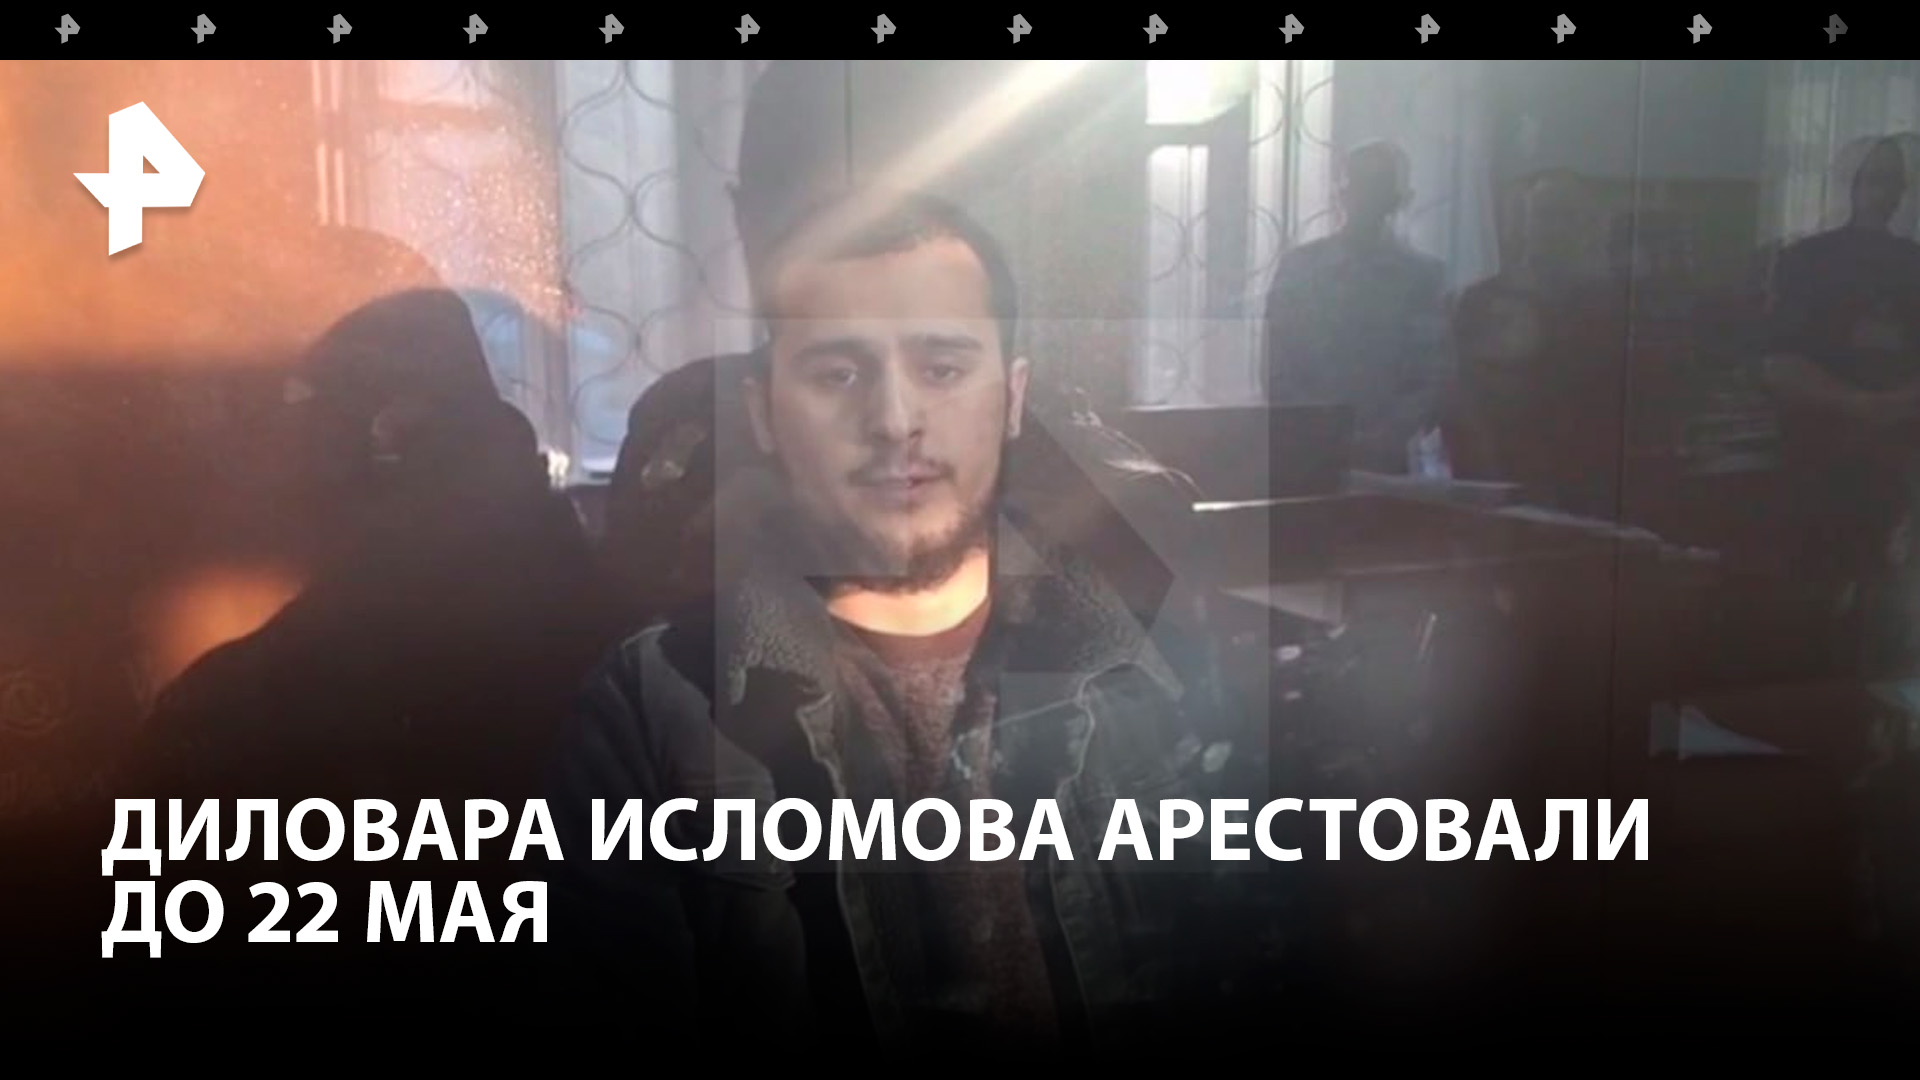 СРОЧНО! Диловара Исломова арестовали в зале суда